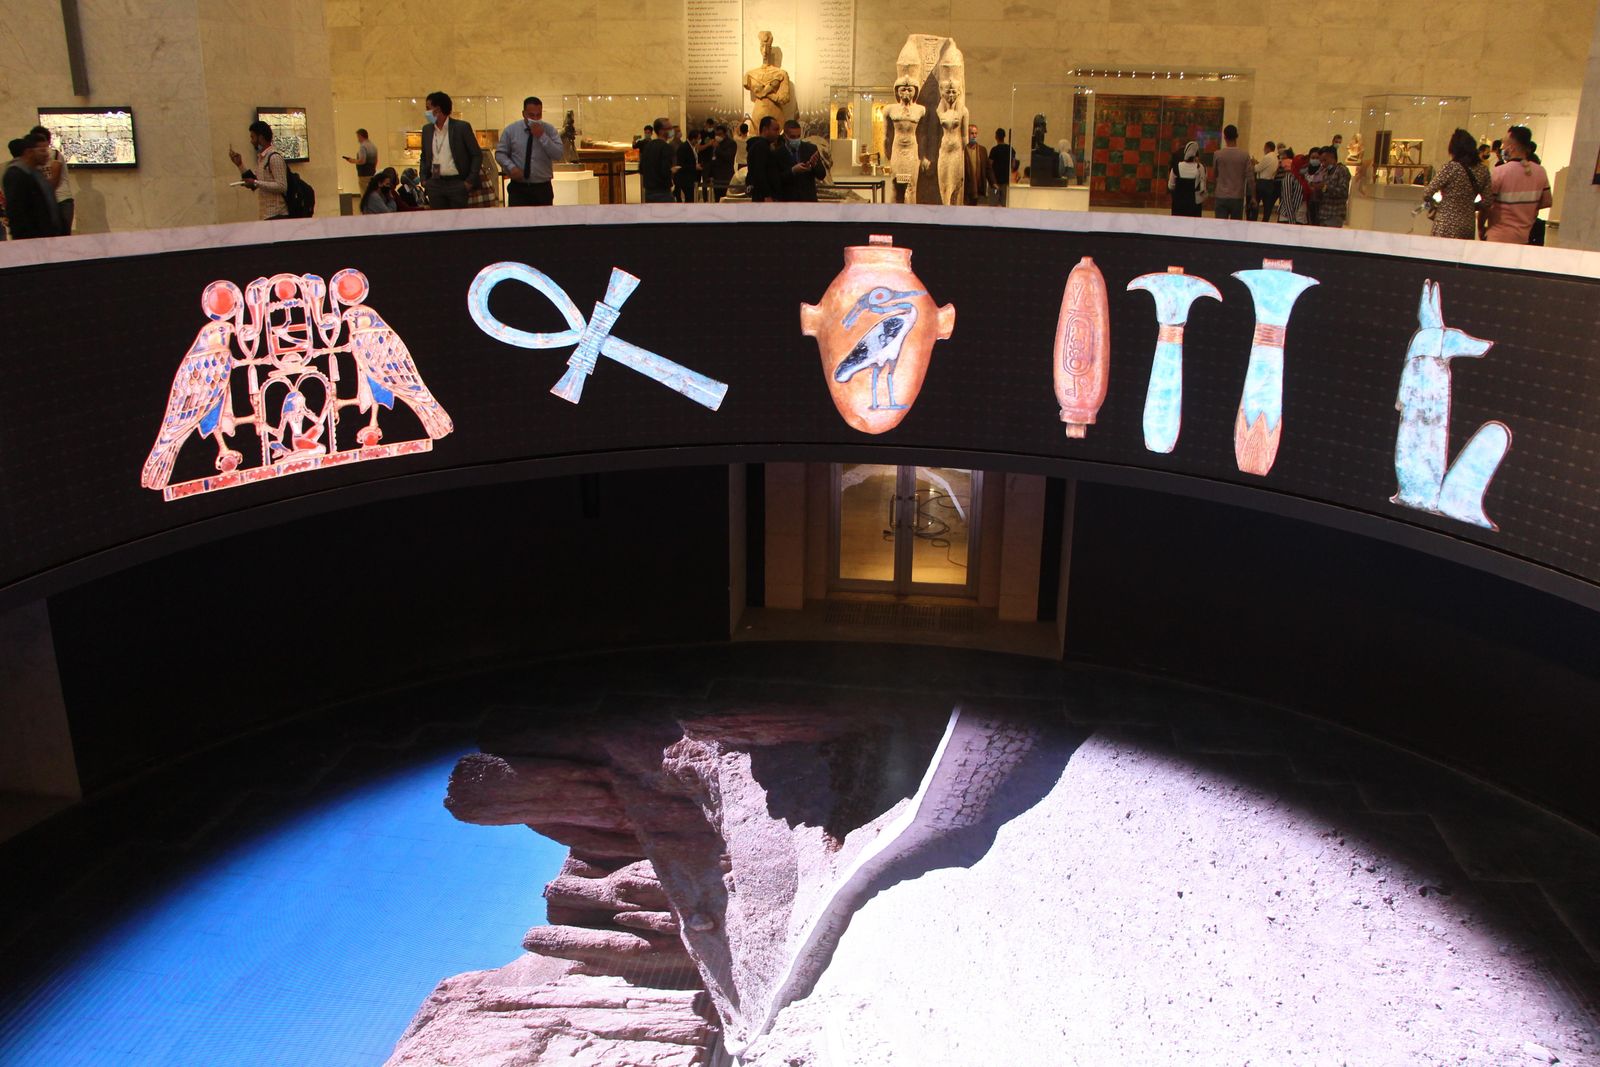 العرض البانورامي الخاص بالمتحف القومي الجديد للحضارة المصرية  - الشرق